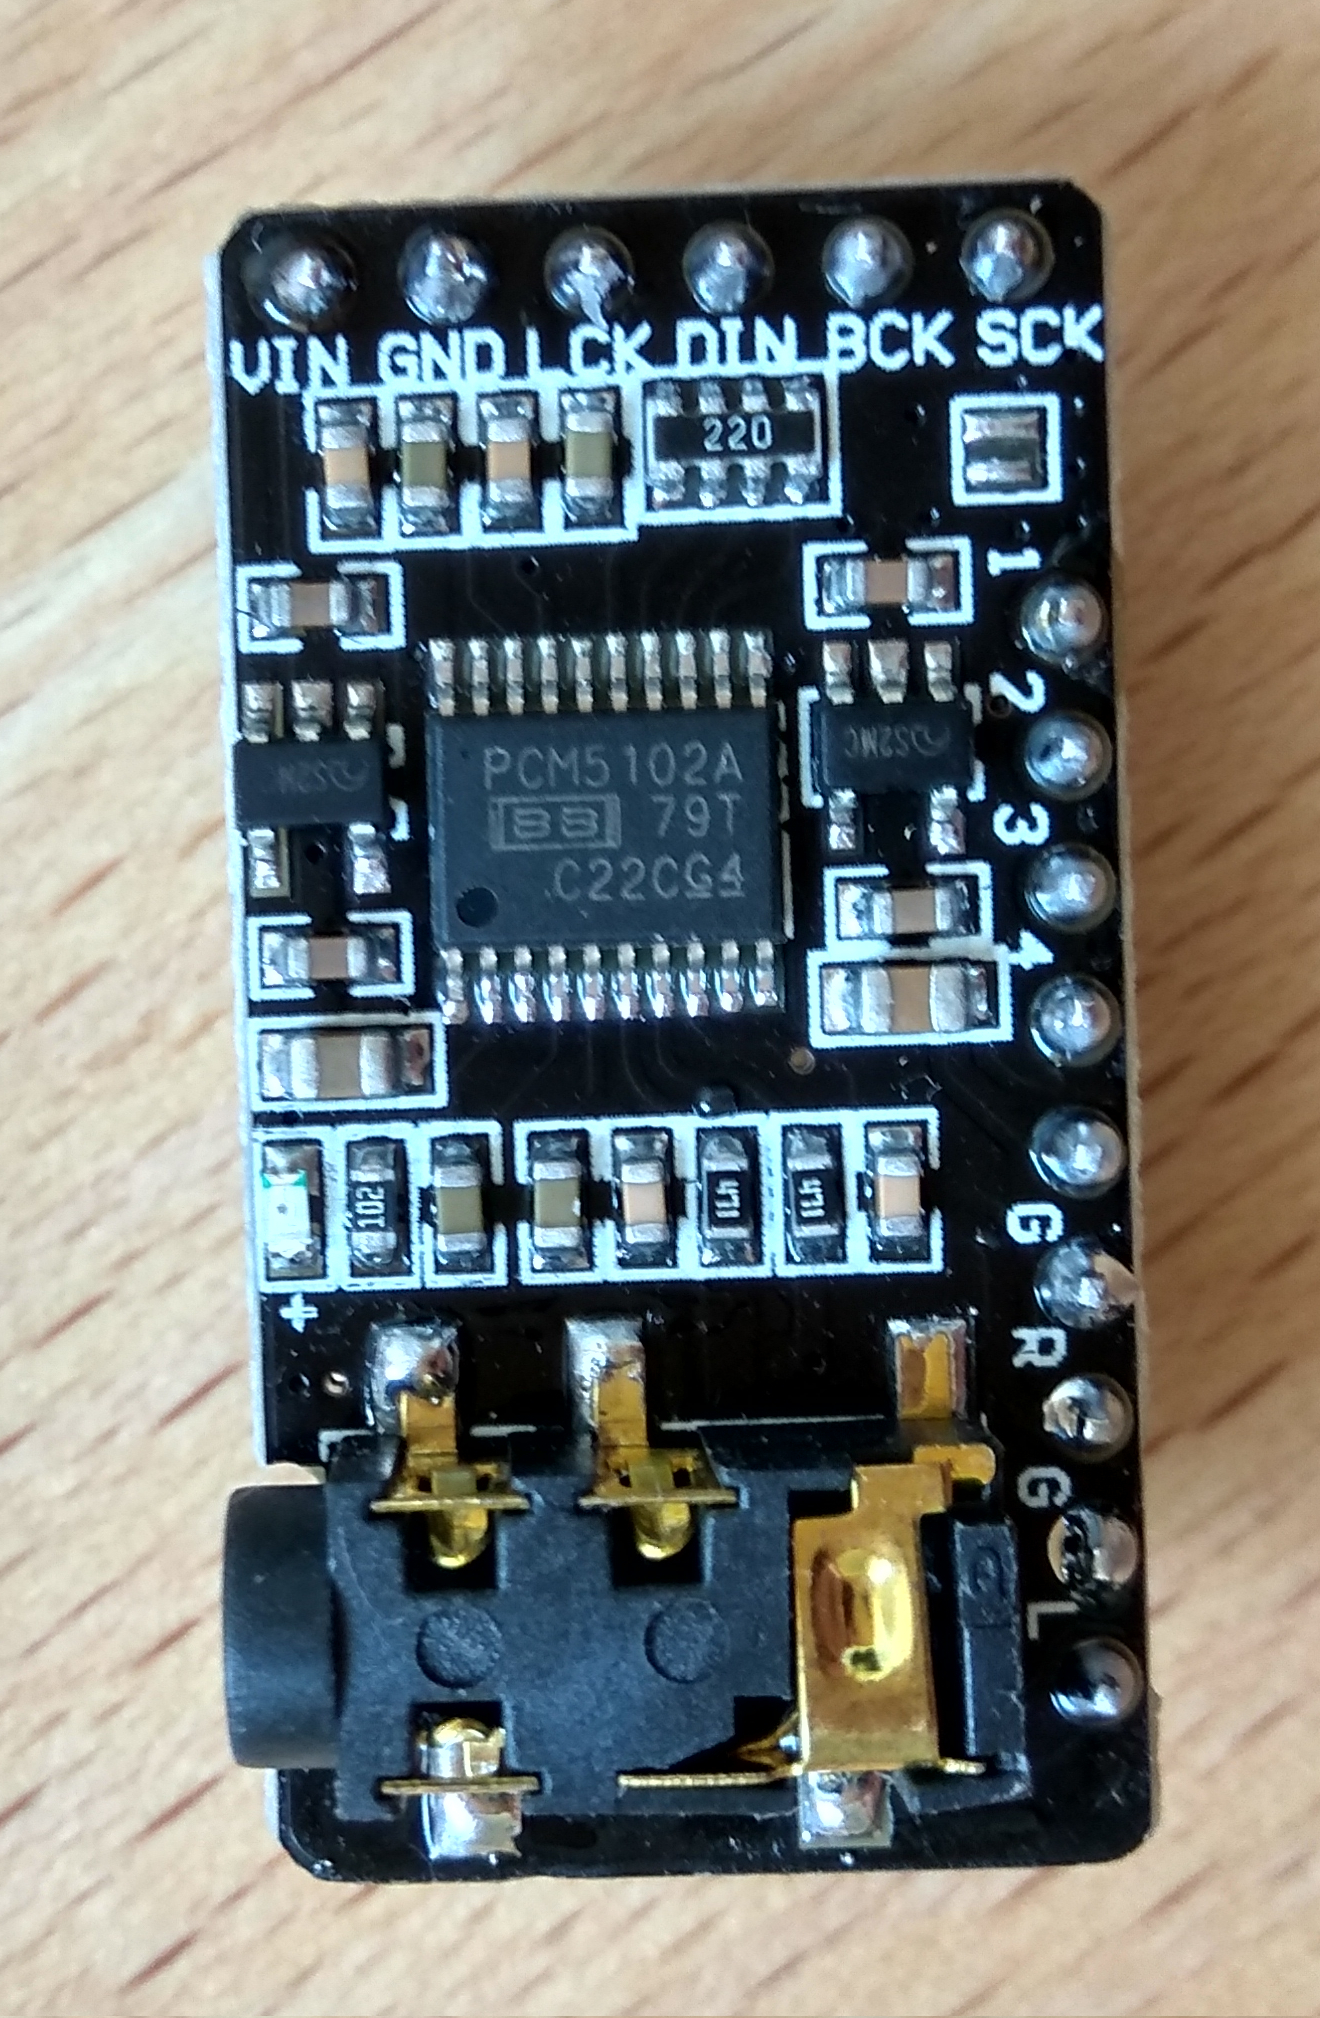 Closeup of a PCM5102A breakout module.